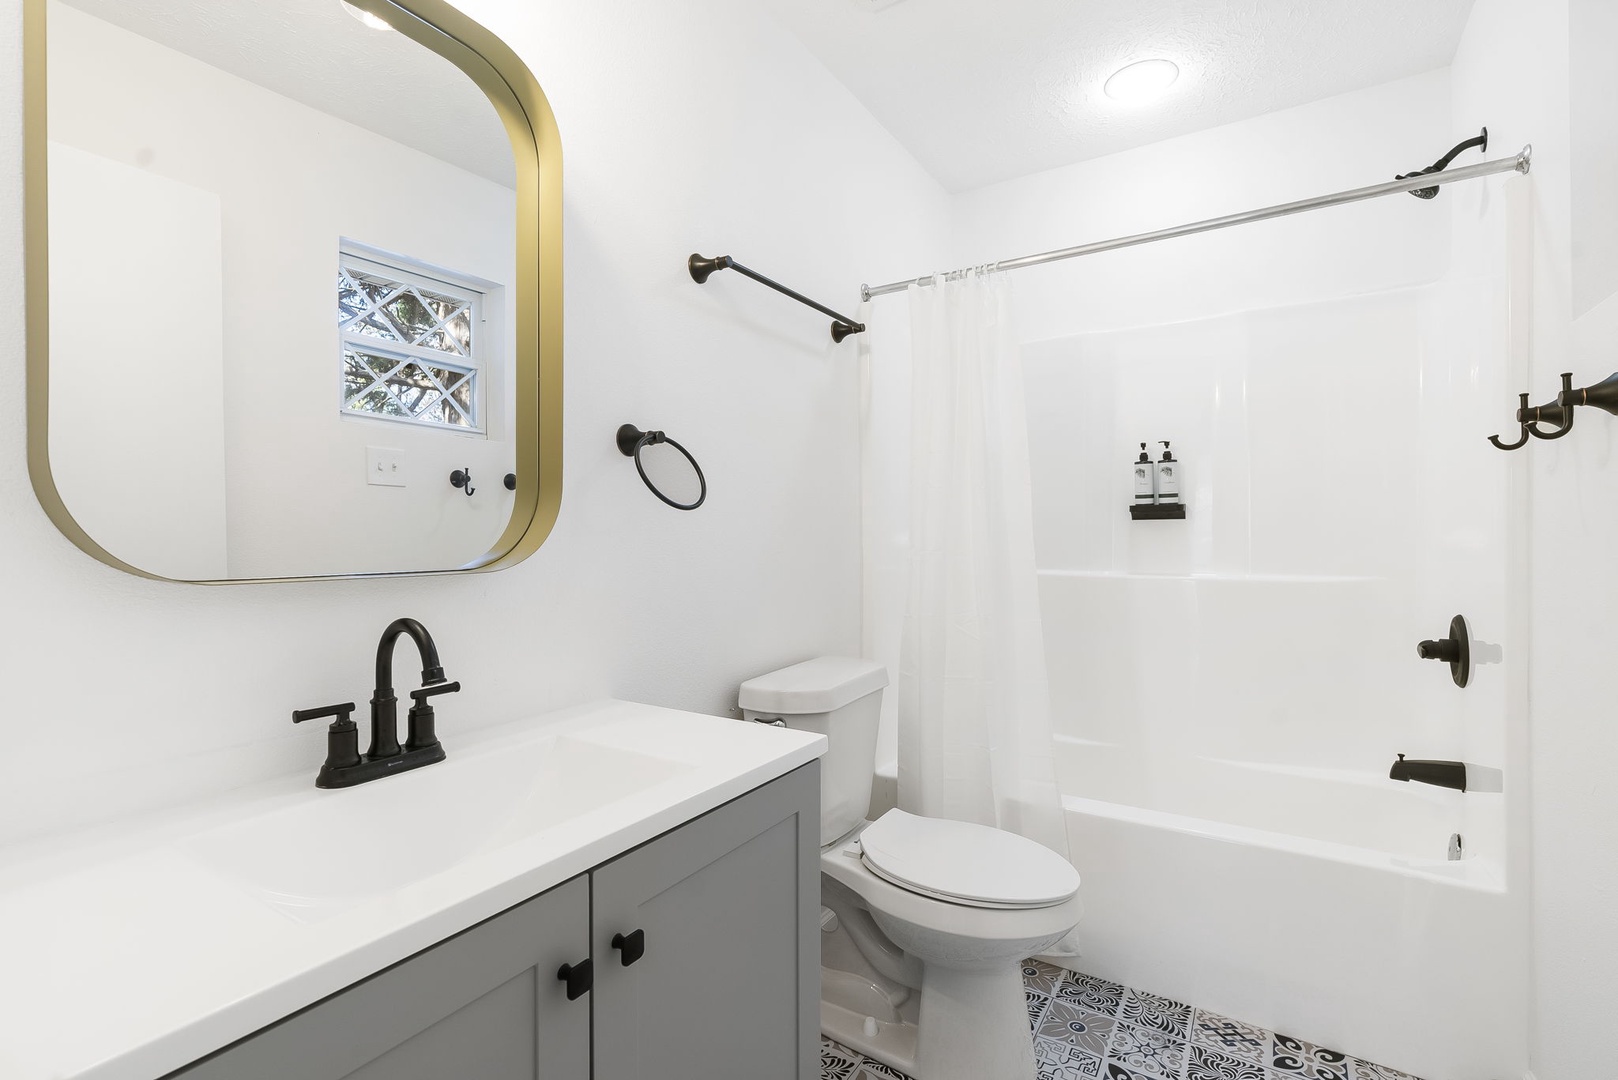 Unit 45: The king en suite bath includes a single vanity & shower/tub combo